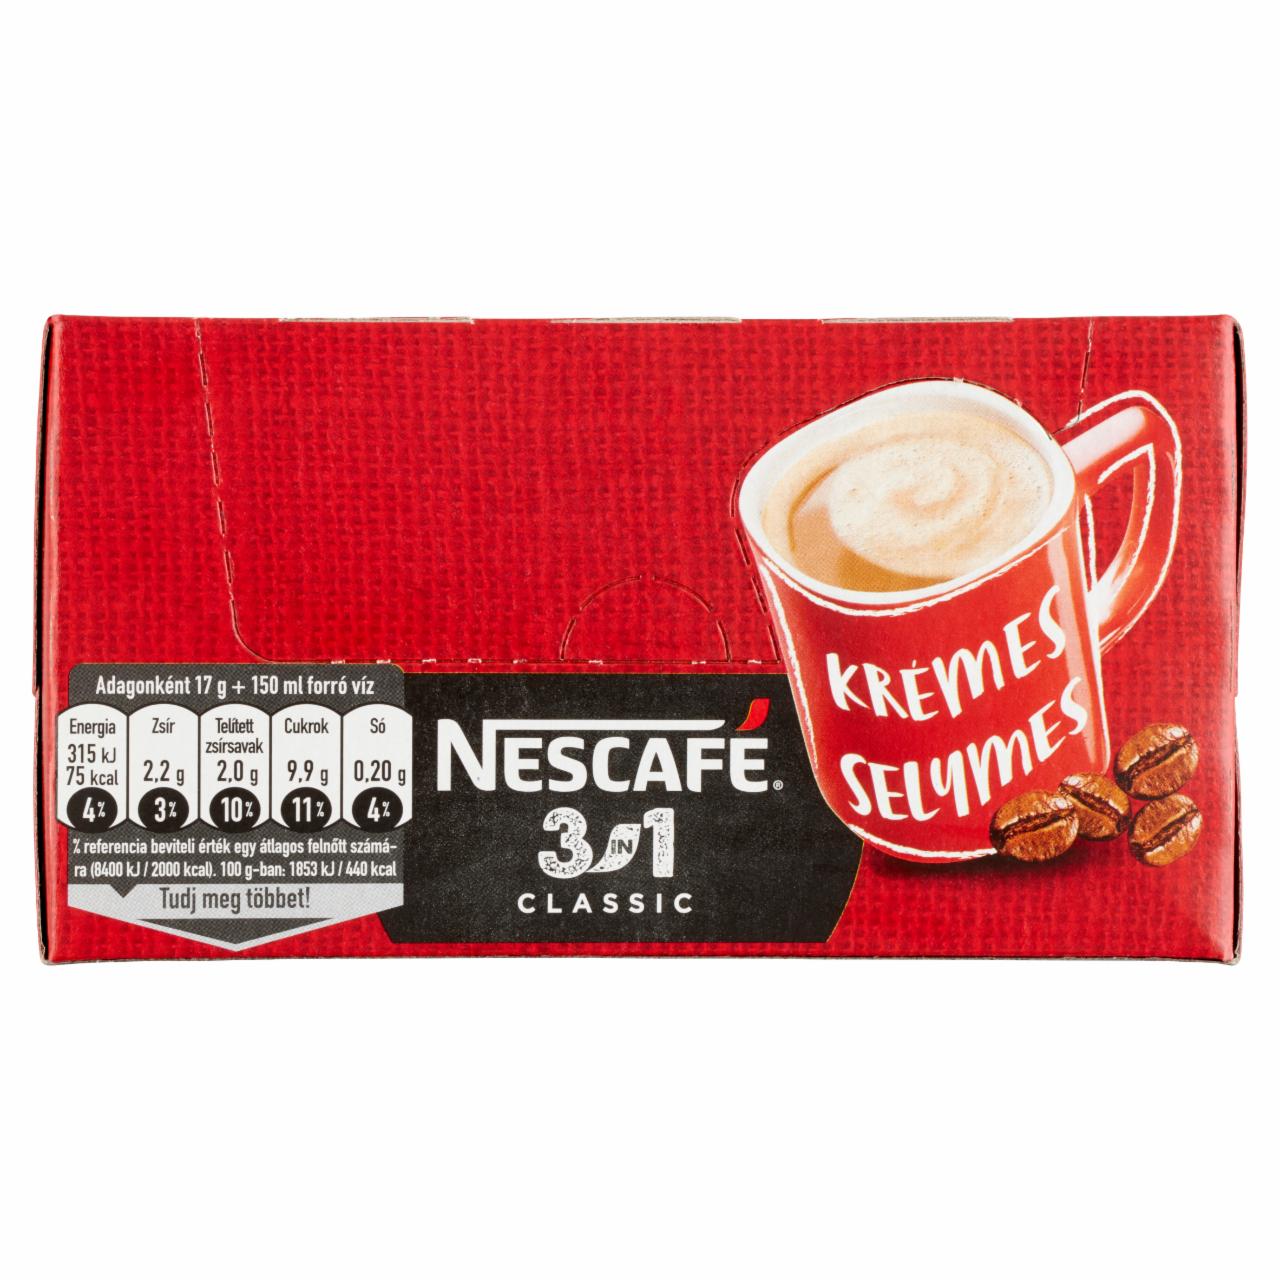 Képek - Nescafé 3in1 Classic azonnal oldódó kávéspecialitás 28 x 17 g (476 g)